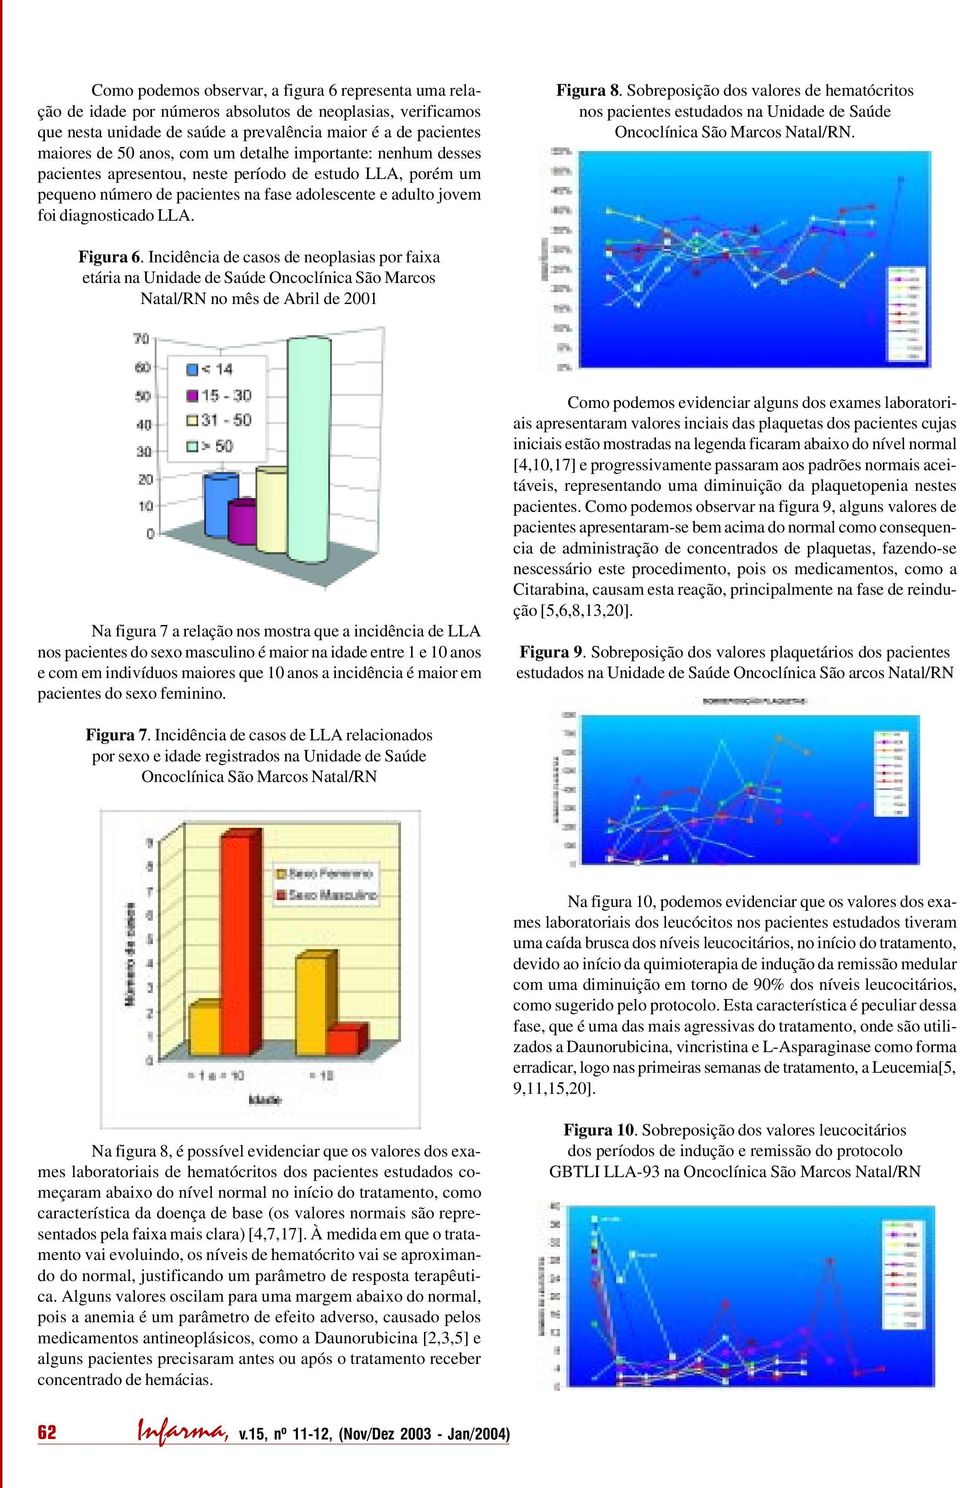 Sobreposição dos valores de hematócritos nos pacientes estudados na Unidade de Saúde Oncoclínica São Marcos Natal/RN. Figura 6.